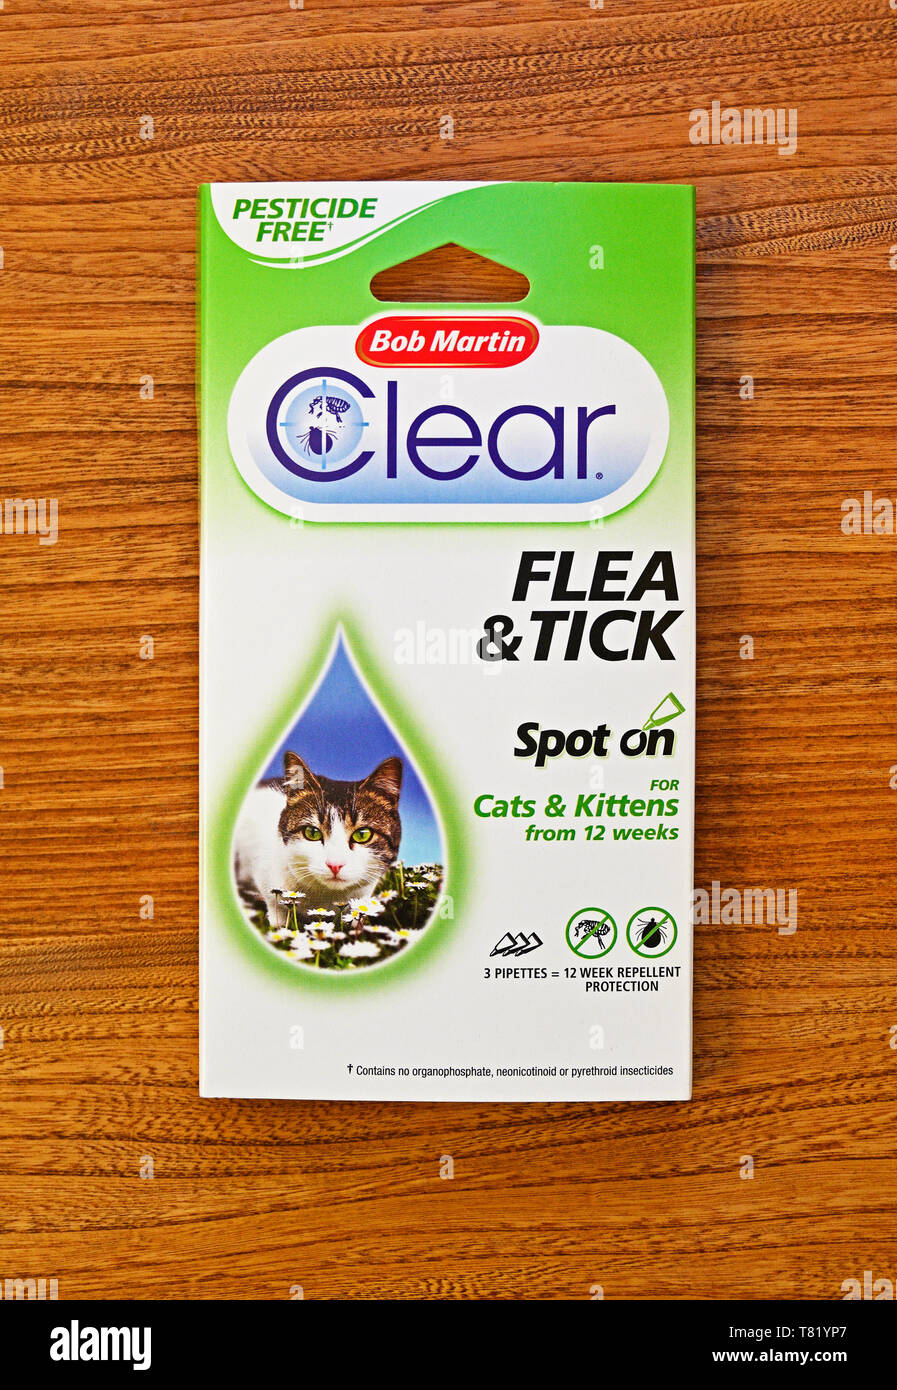 Fotografia di Pack di Bob Martin 'Clear' Flea & Tick Spot on per gatti e gattini da 12 settimane. 3 pipette = 12 settimane di protezione repellente. Foto Stock